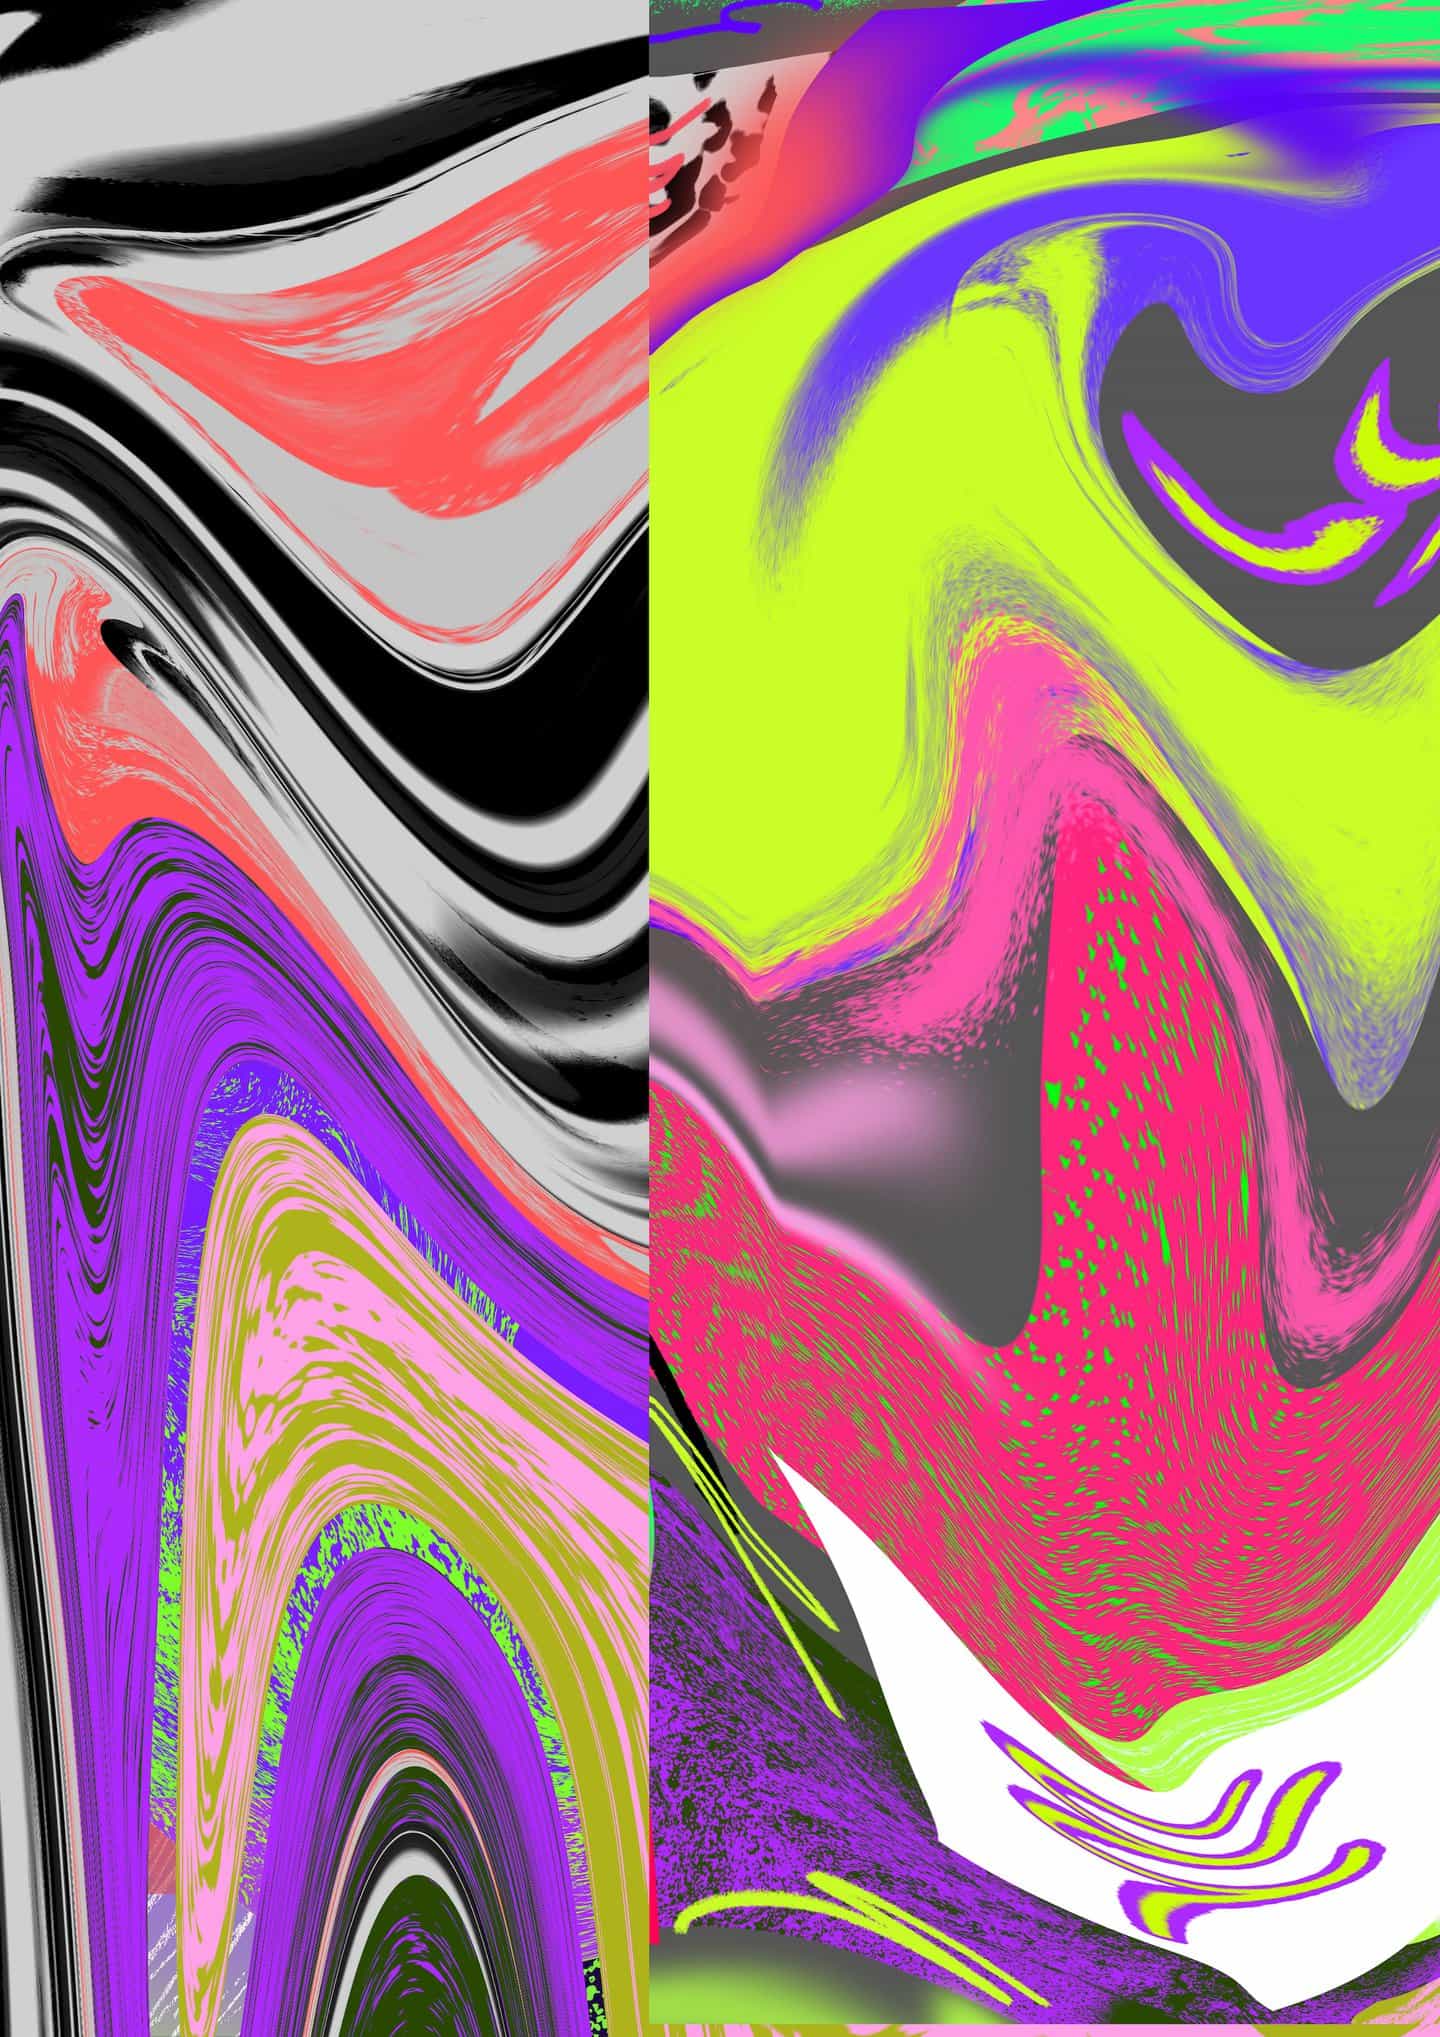 Kris ha diseñado una serie de patrones abstractos que puedes usar en tu autorretrato. Descárgalos arriba.